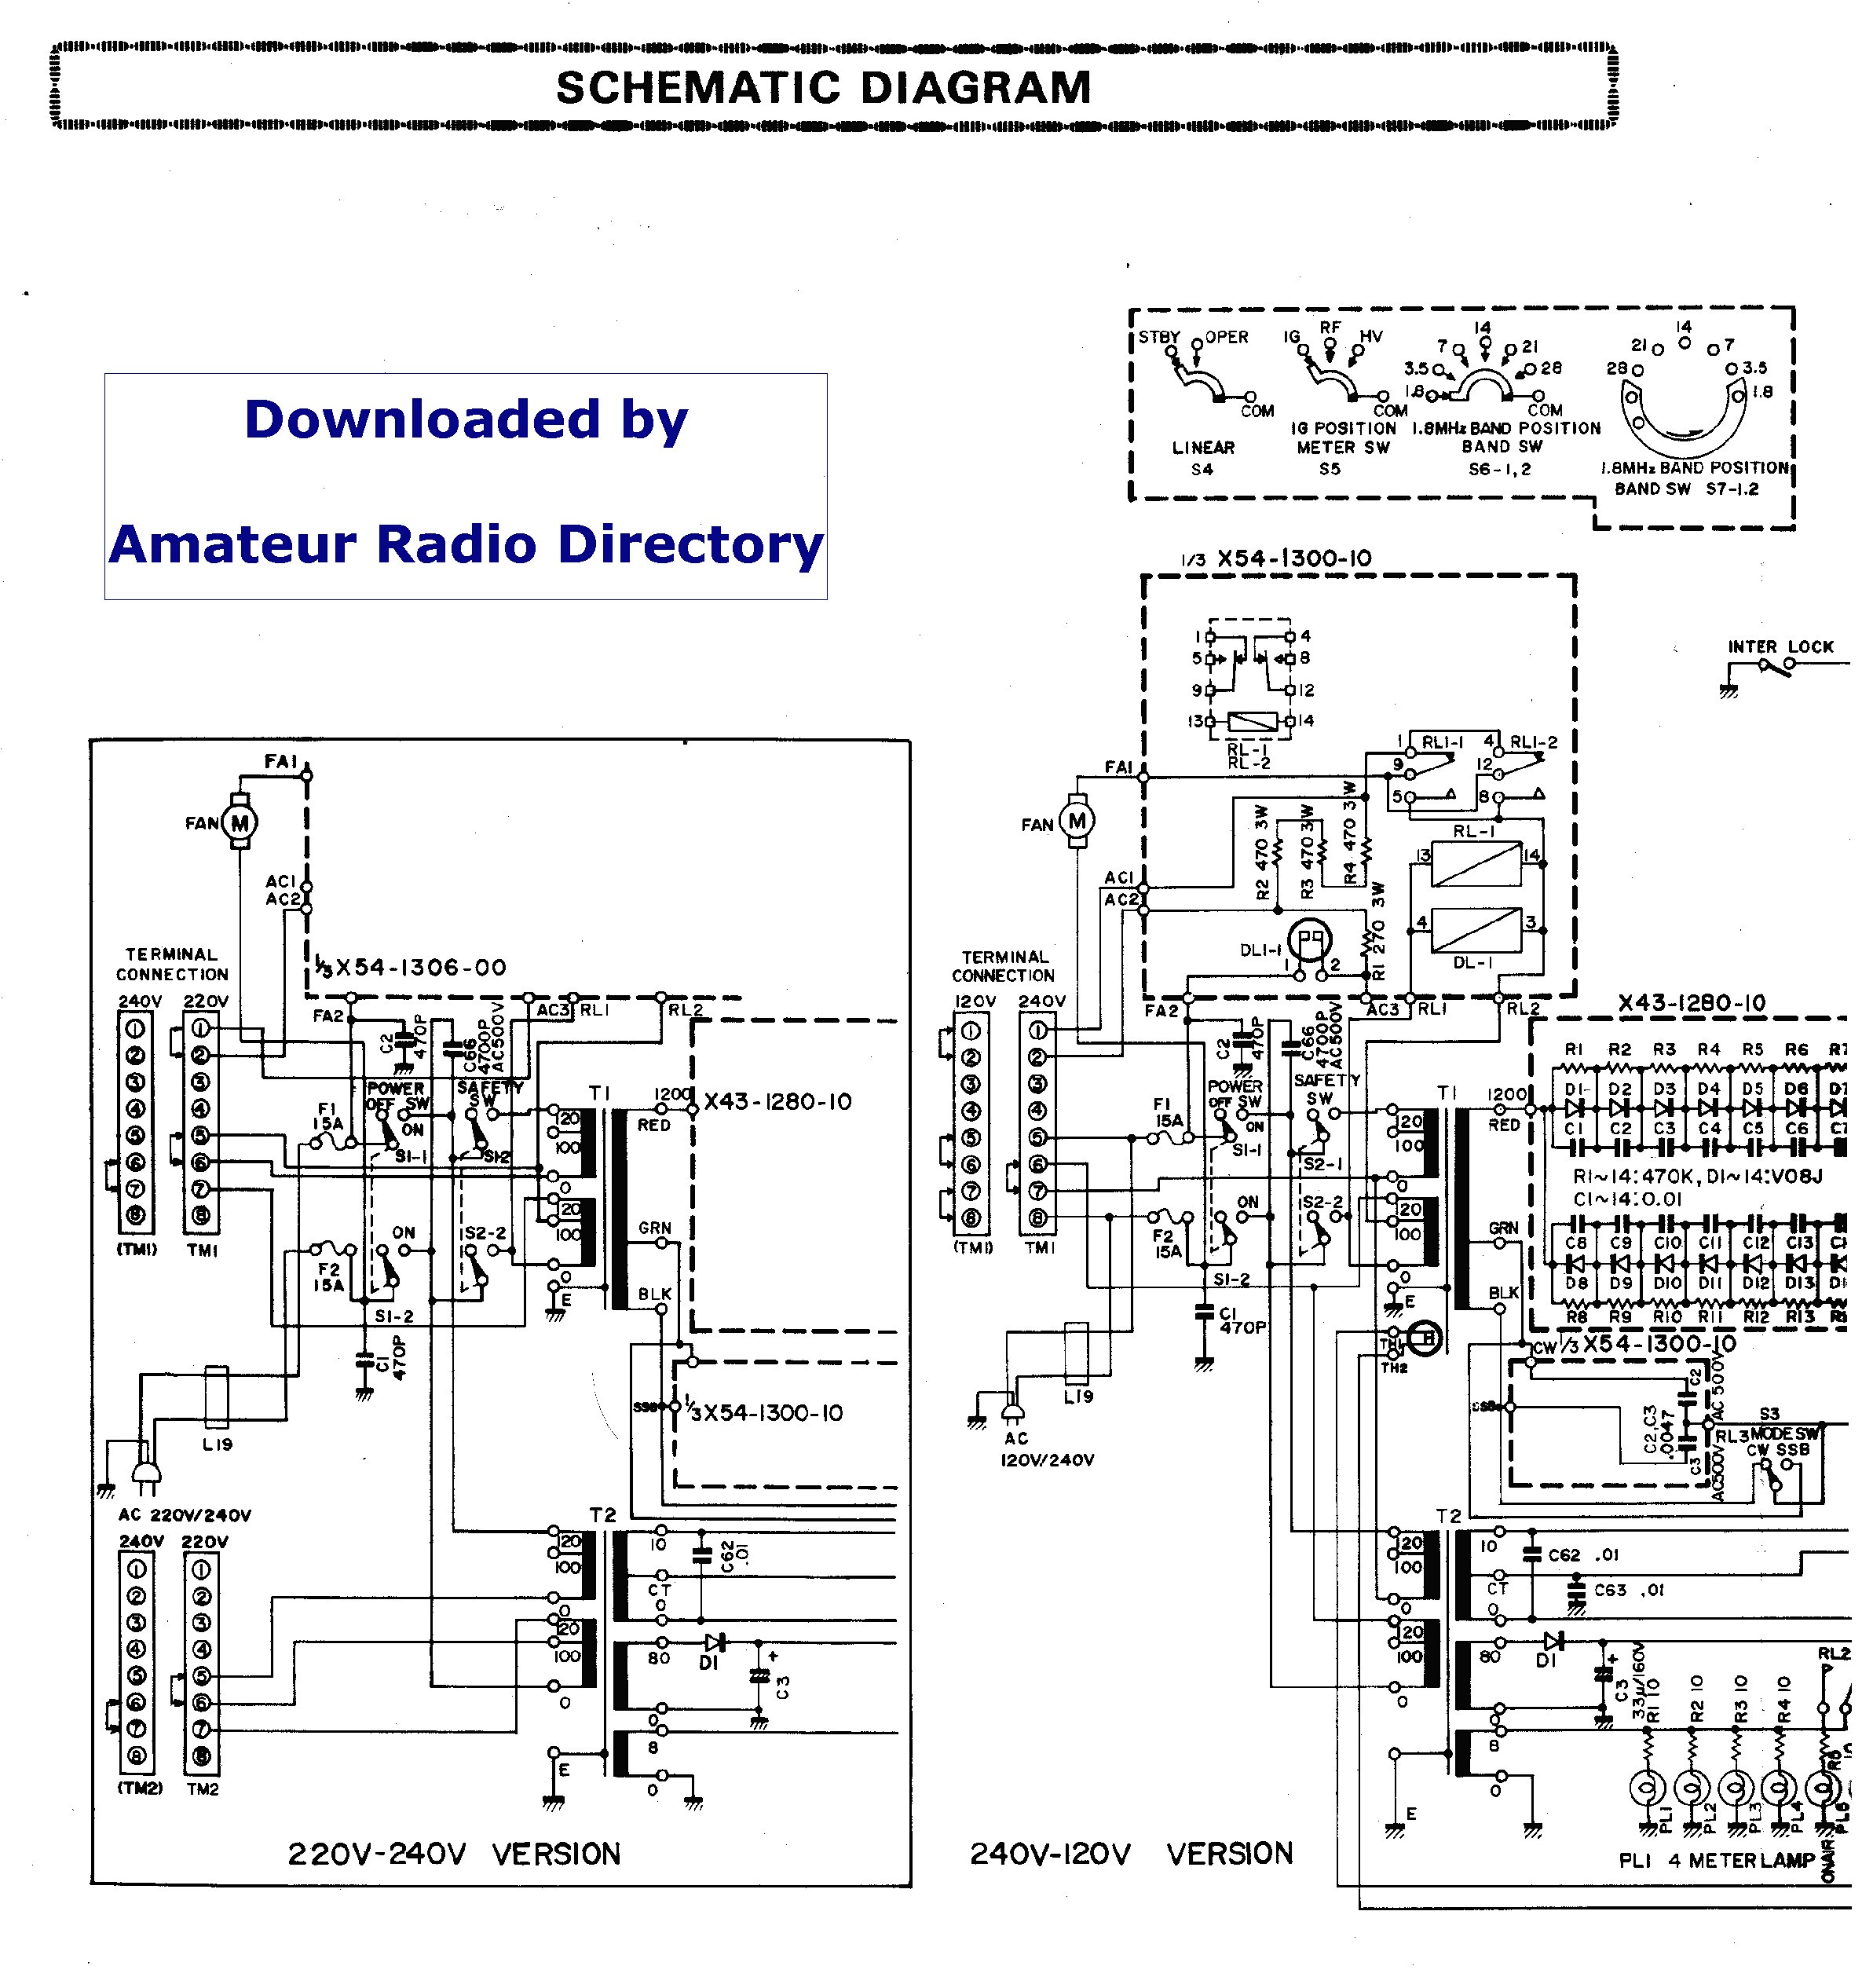 ouku 6 2 wiring diagram smart wiring diagrams u2022 rh krakencraft co ouku car dvd player wiring diagram ouku car dvd player wiring diagram